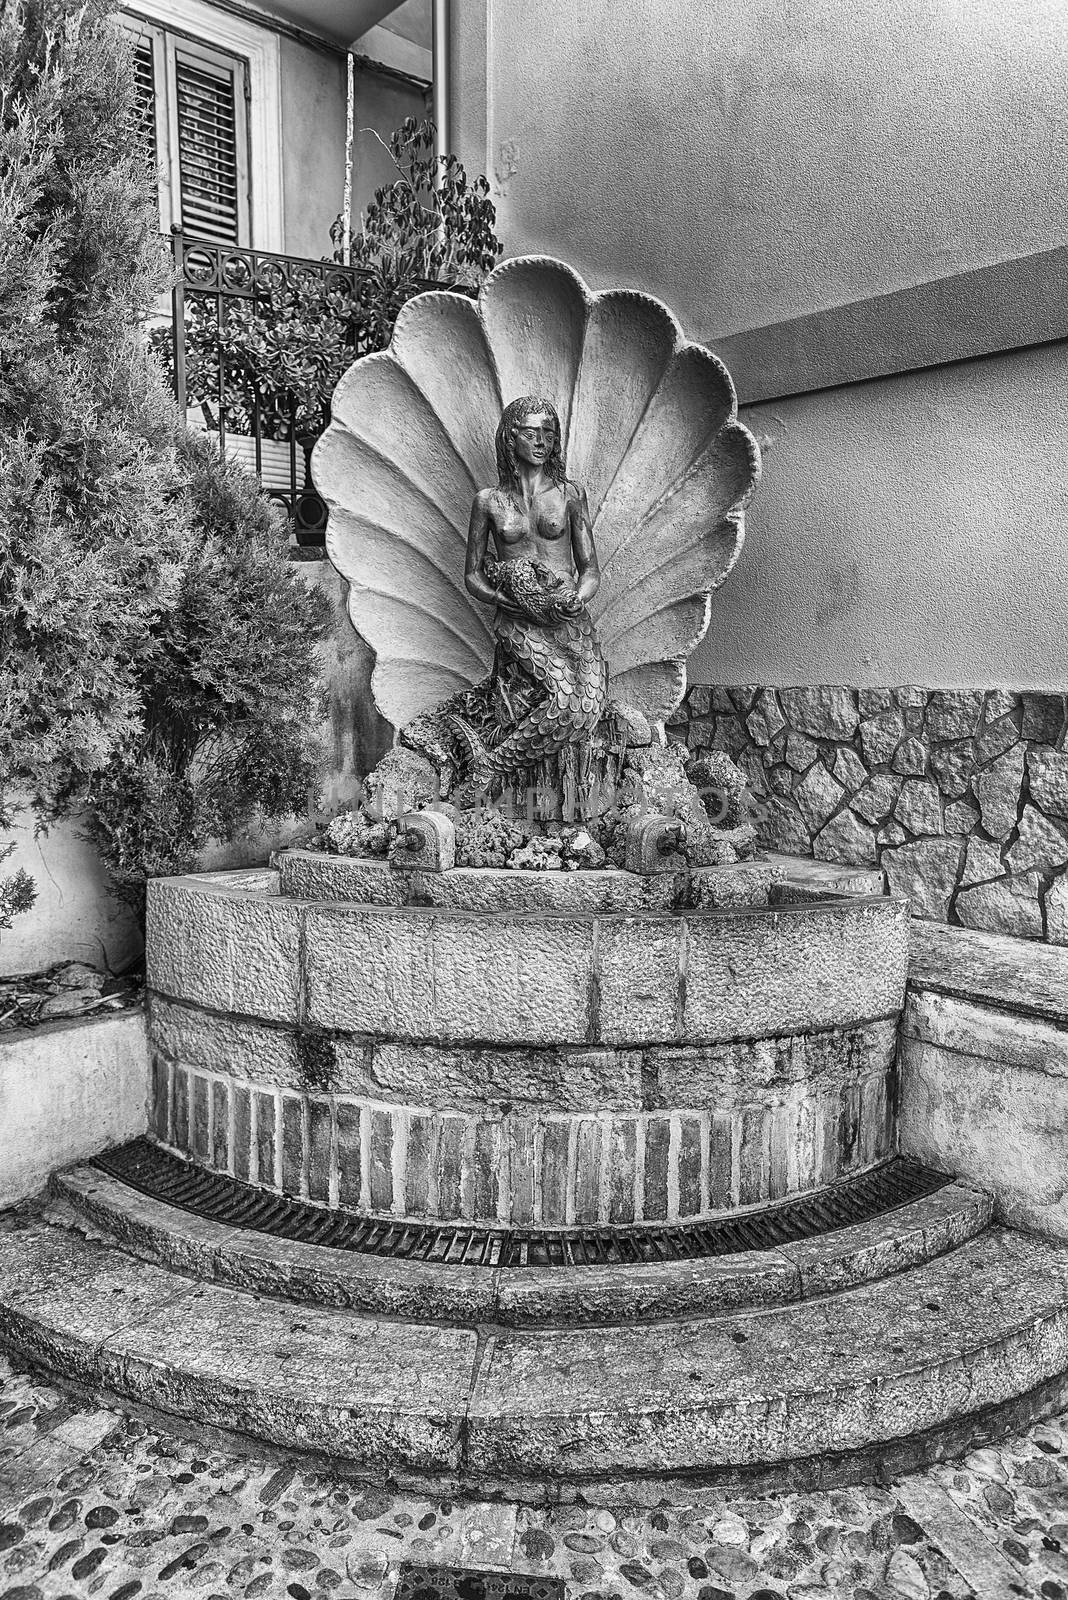 Scenic fountain in the village of Scilla, Calabria, Italy by marcorubino